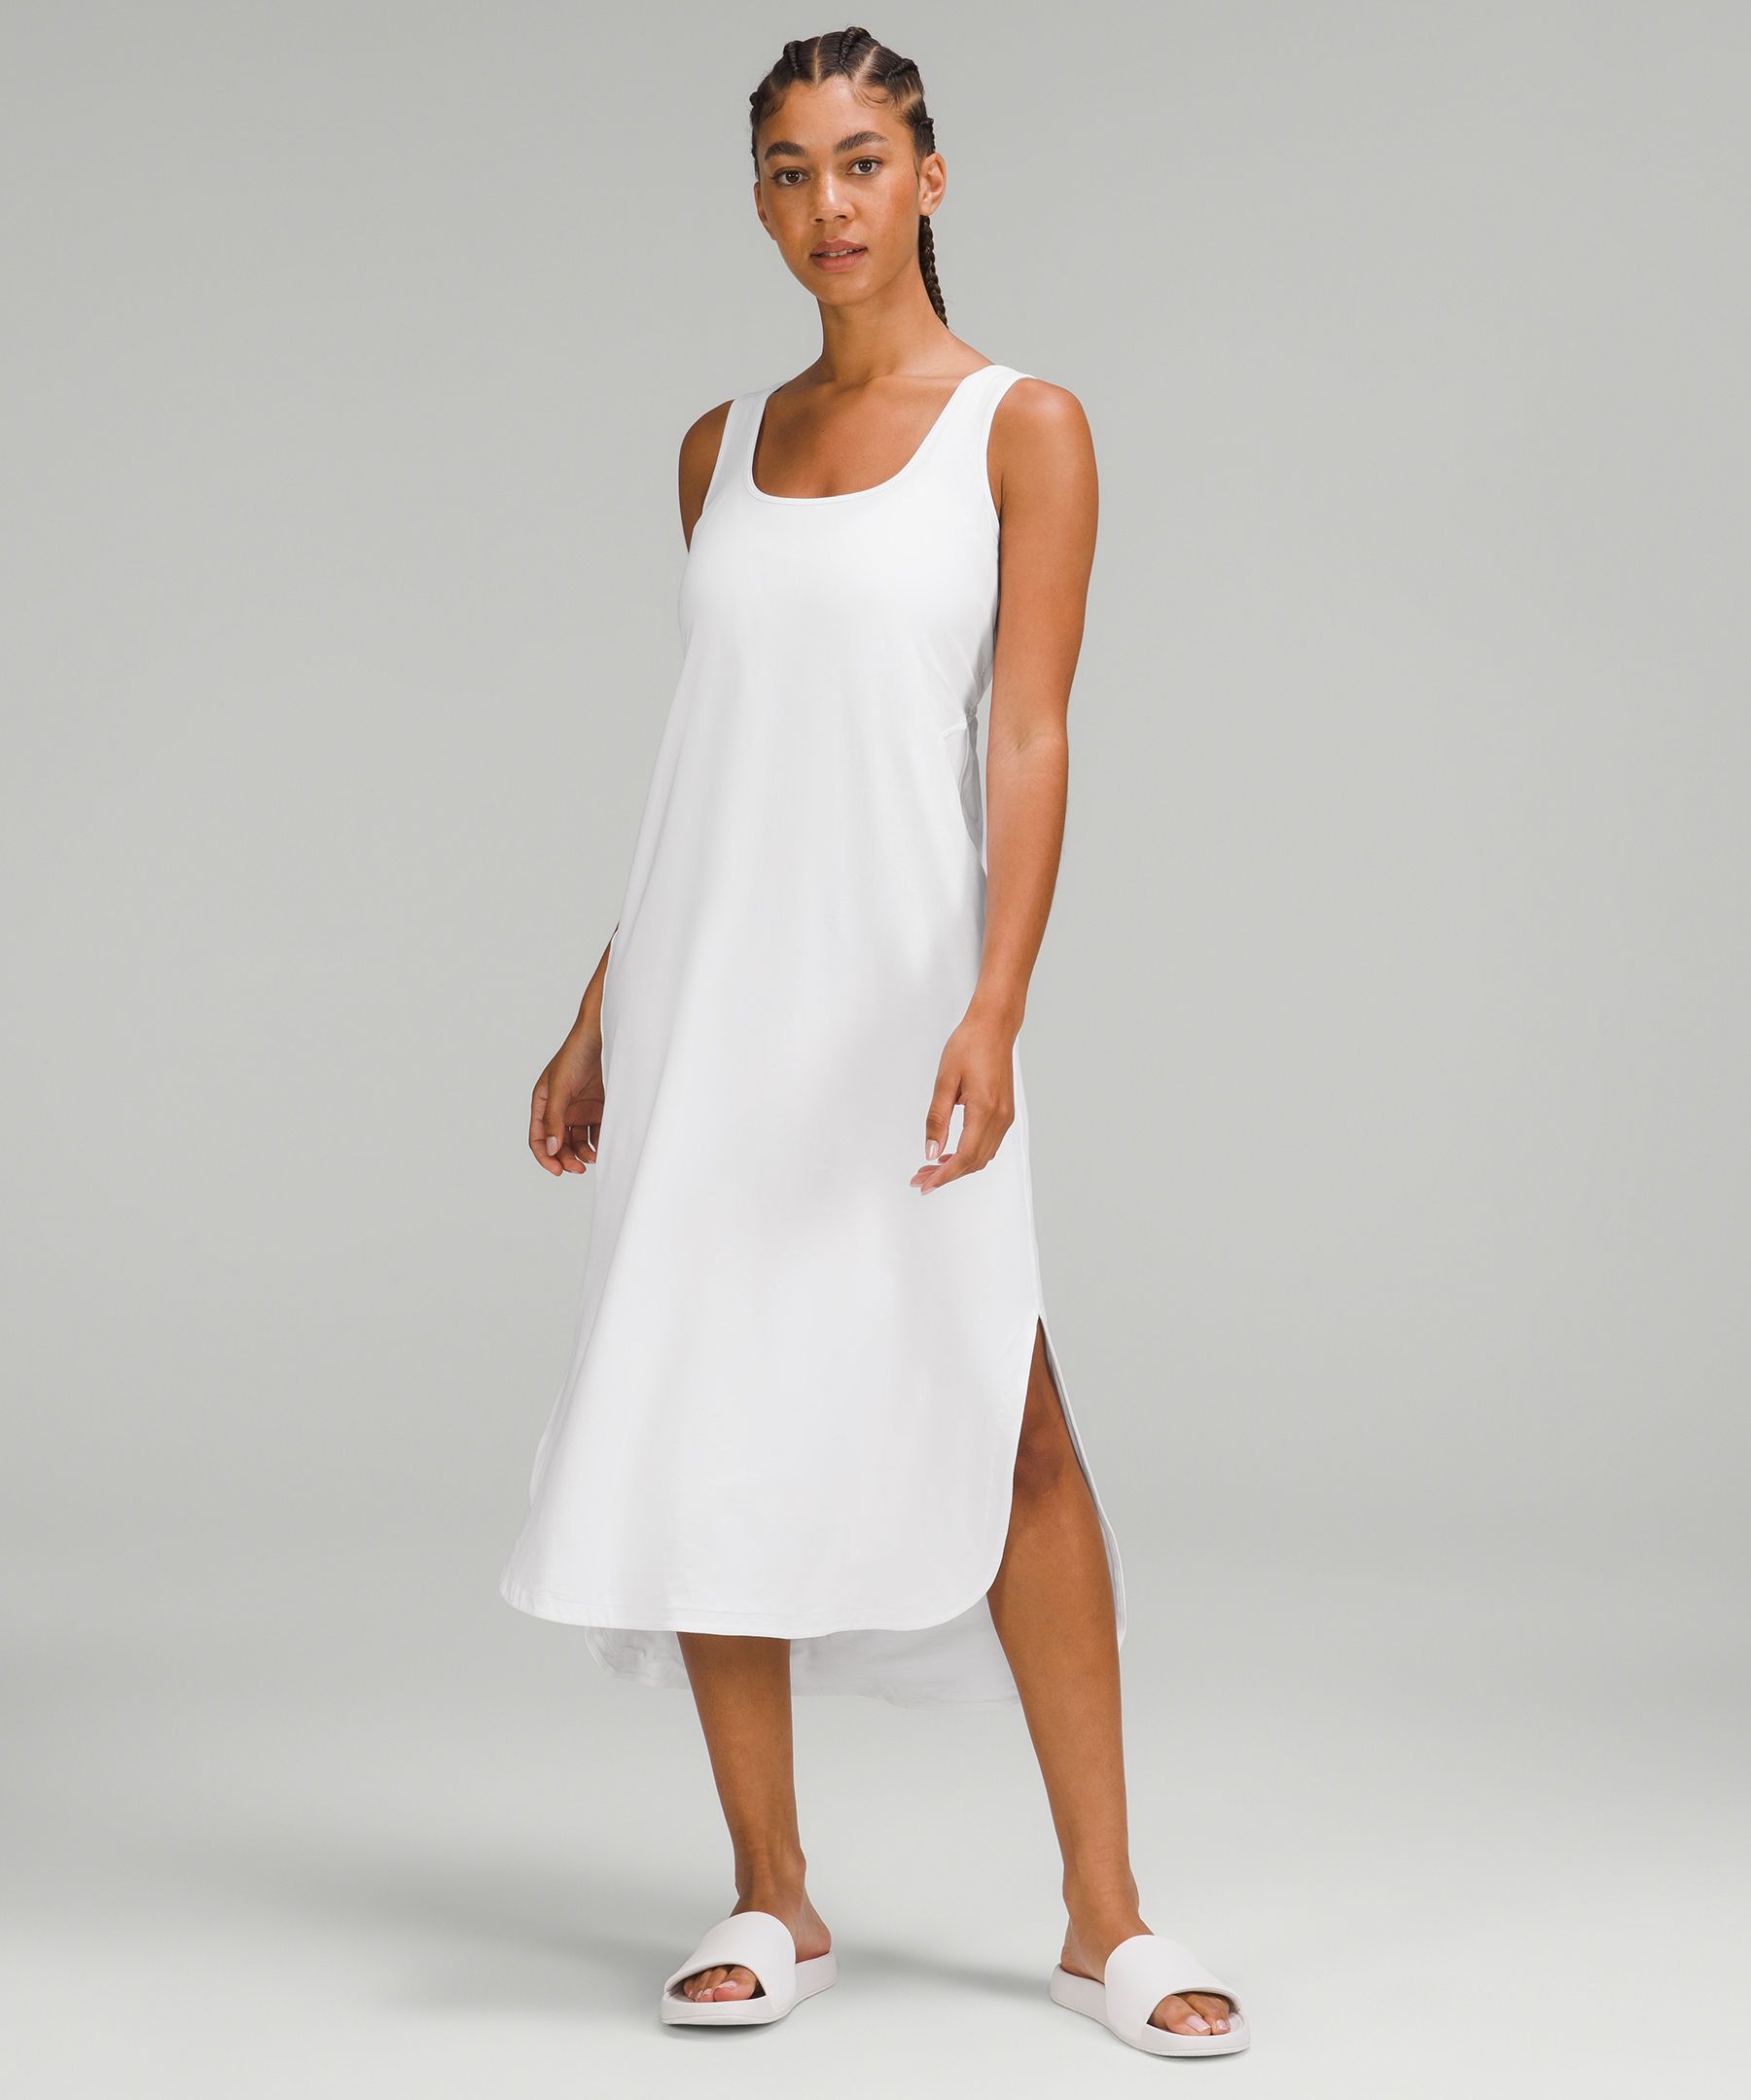 Lululemon athletica Cotton Wrap-Front T-Shirt Dress, Women's Dresses